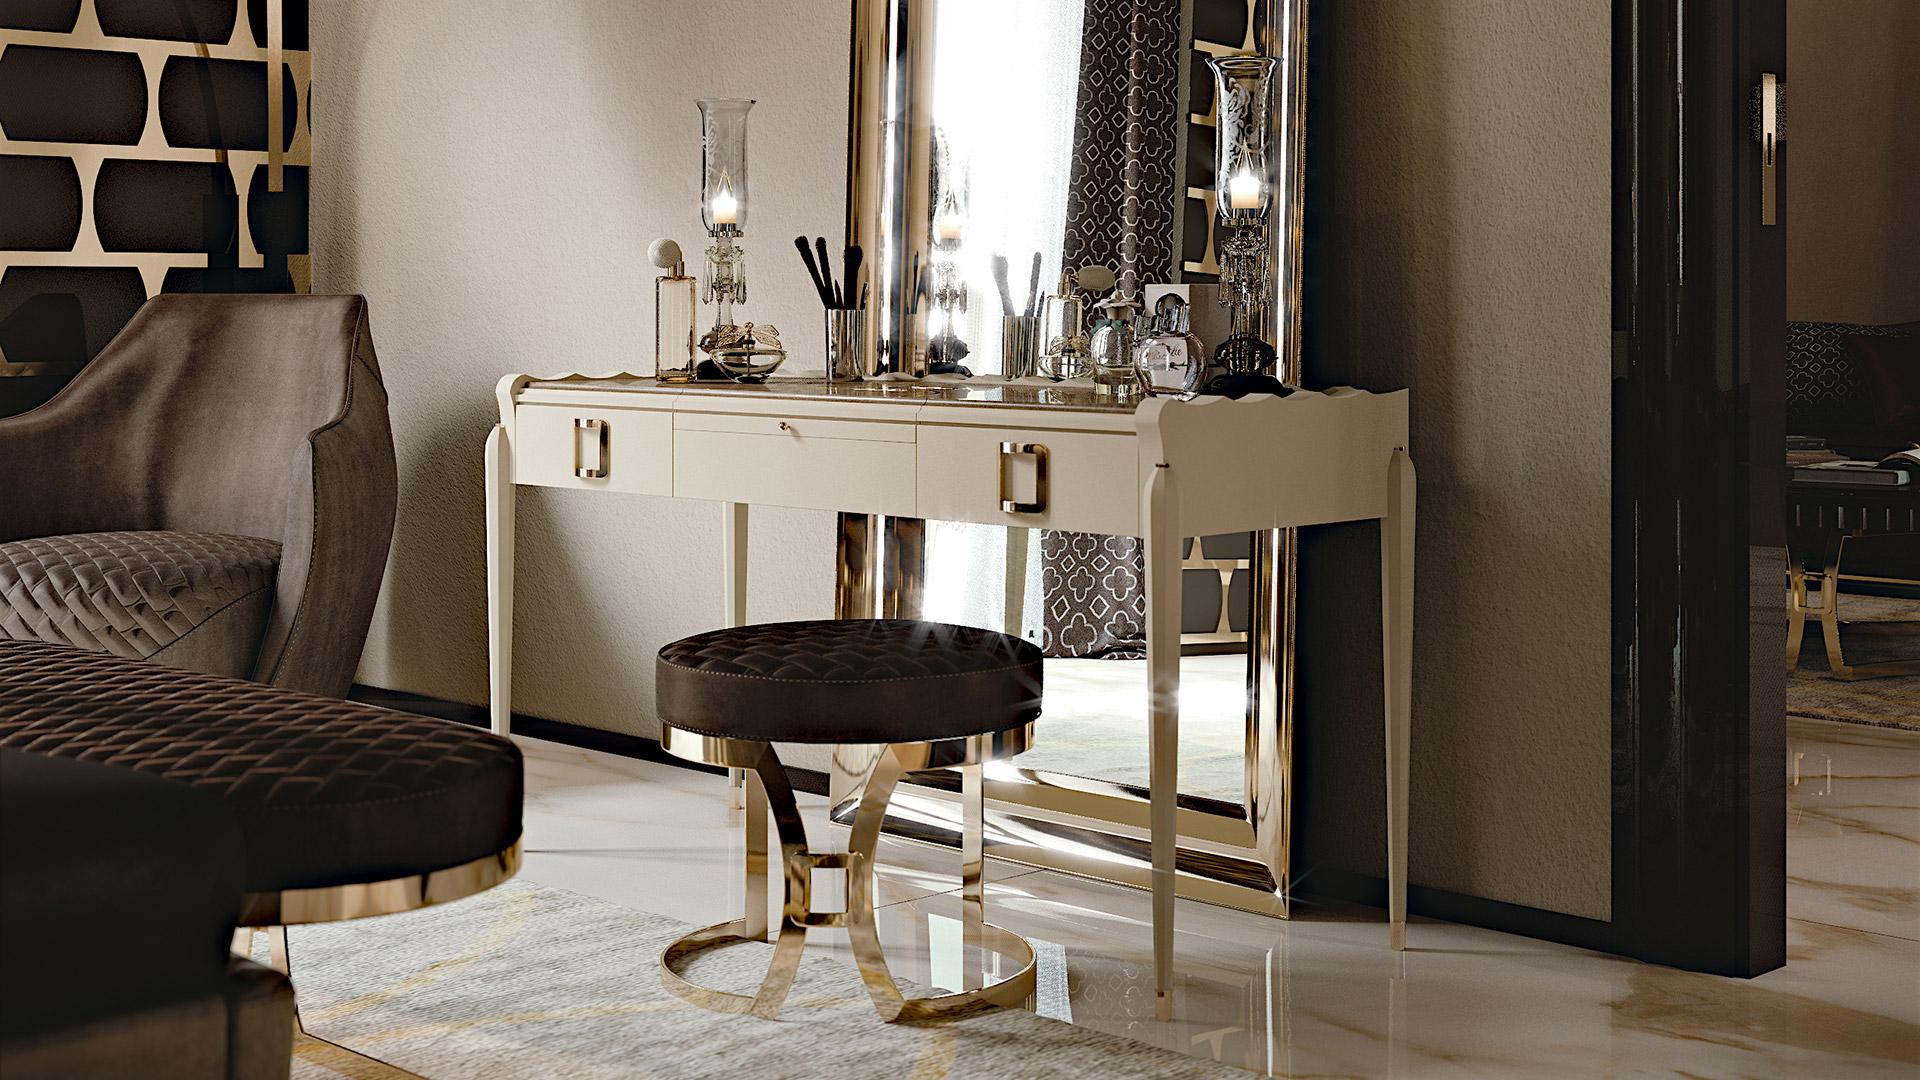 Toilette avec deux tiroirs et miroir ouvrant. Caractérisé par des poignées dorées en métal quadrillées et, à l'intérieur de l'ouverture, un magnifique porte-bijoux rembourré pour ranger vos objets les plus précieux.
Sur le dessus, un magnifique